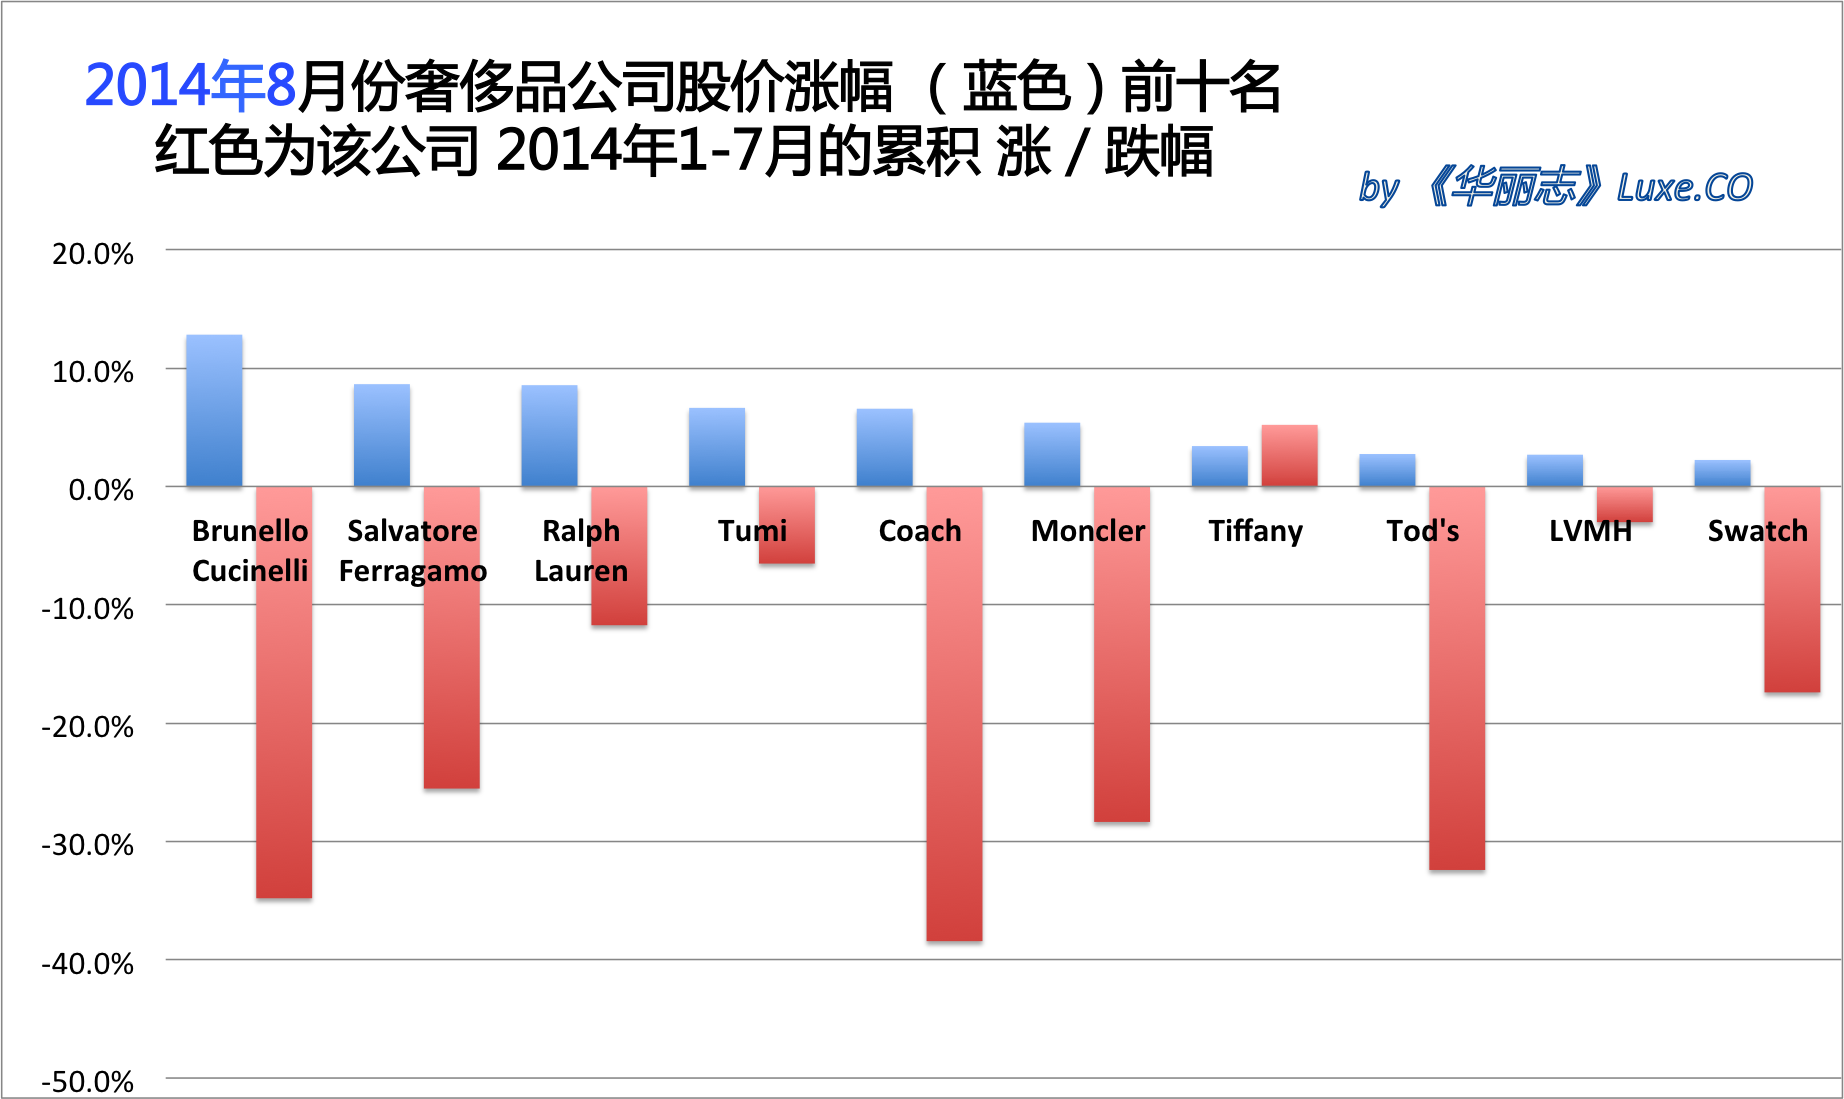 《华丽志》奢侈品股票月度排行榜 (2014年8月)